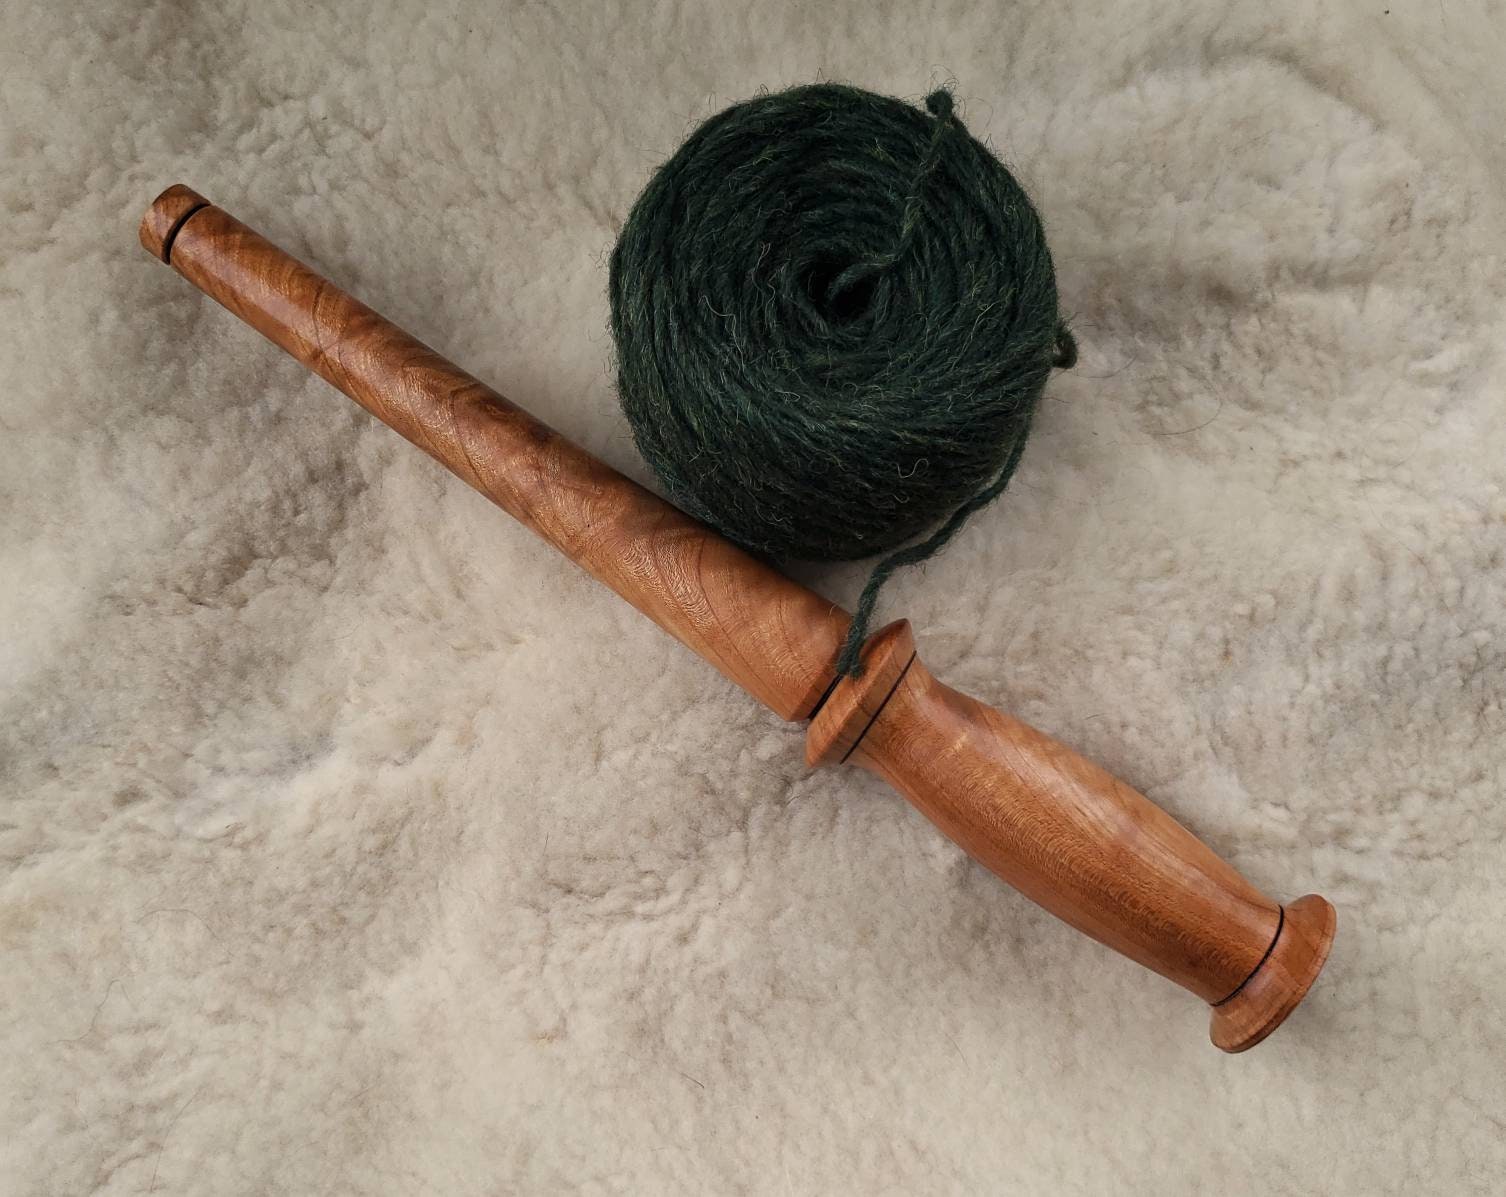 Simple Nostepinne Wool Winder 2 Sizes Cherry Yarn Baller Gift for Spinner/  Knitter 